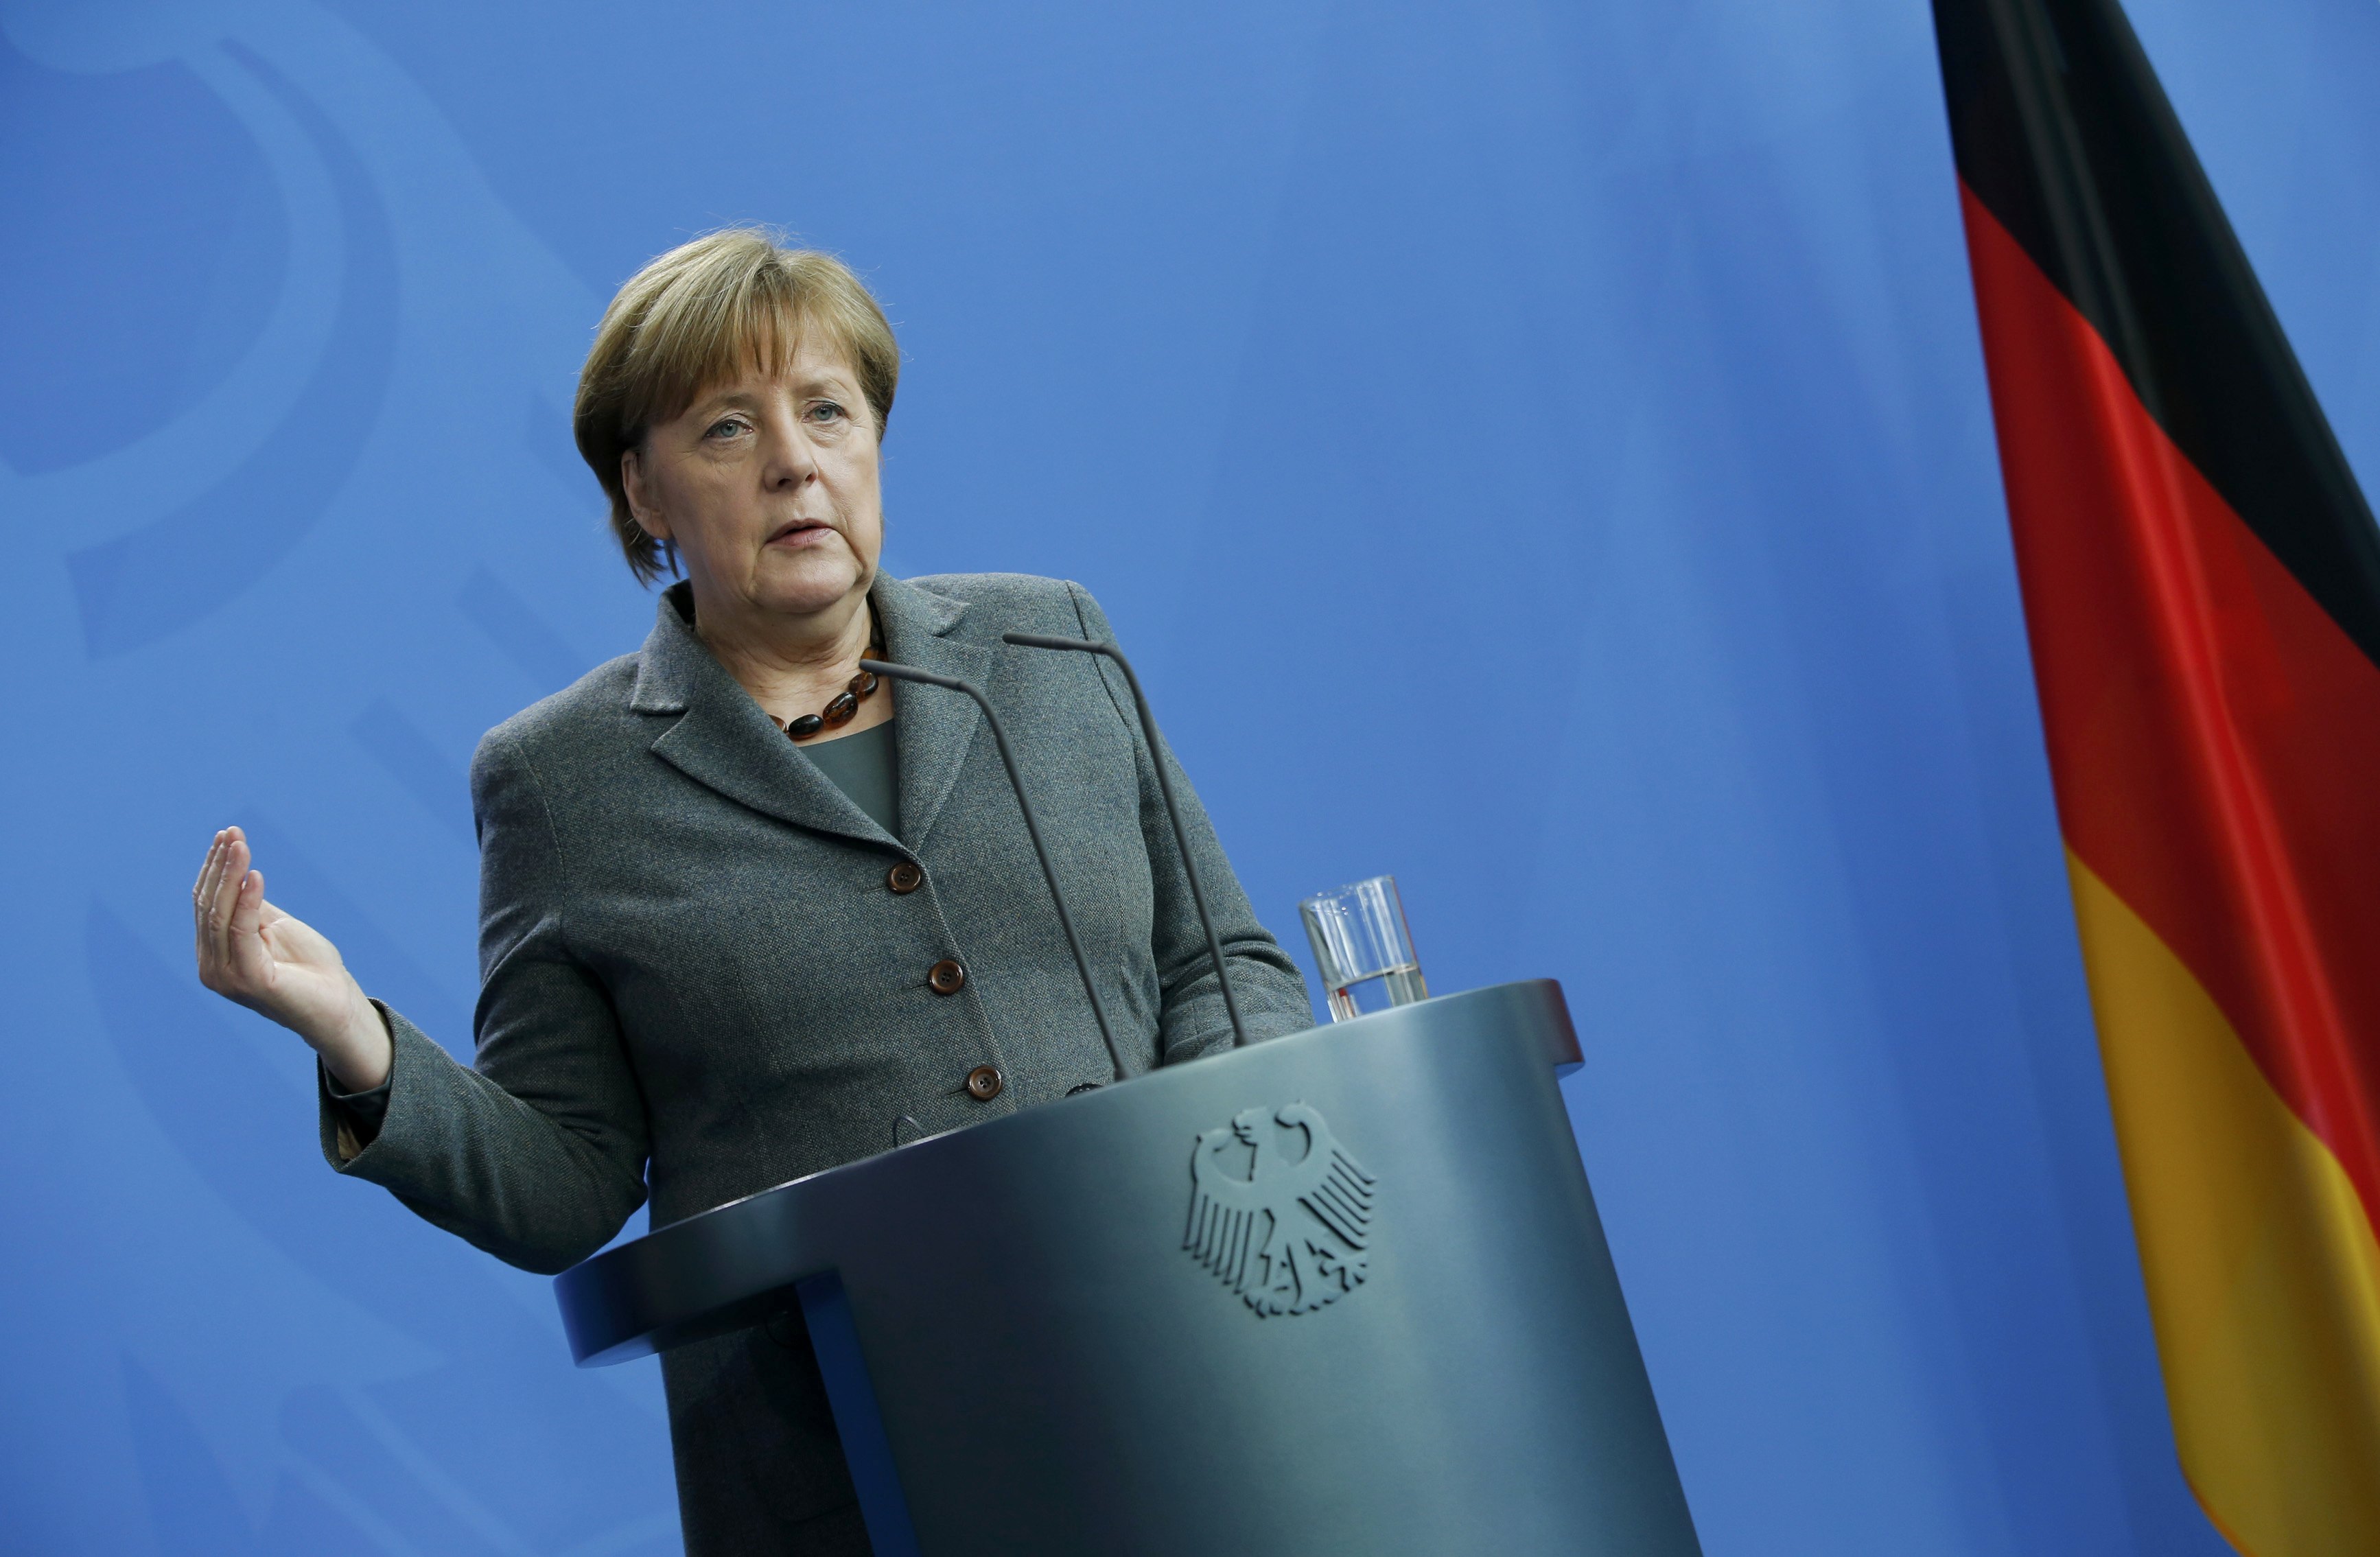 Ενεργότερο ρόλο για τη Γερμανία στις διεθνείς υποθέσεις επιδιώκει η Μέρκελ